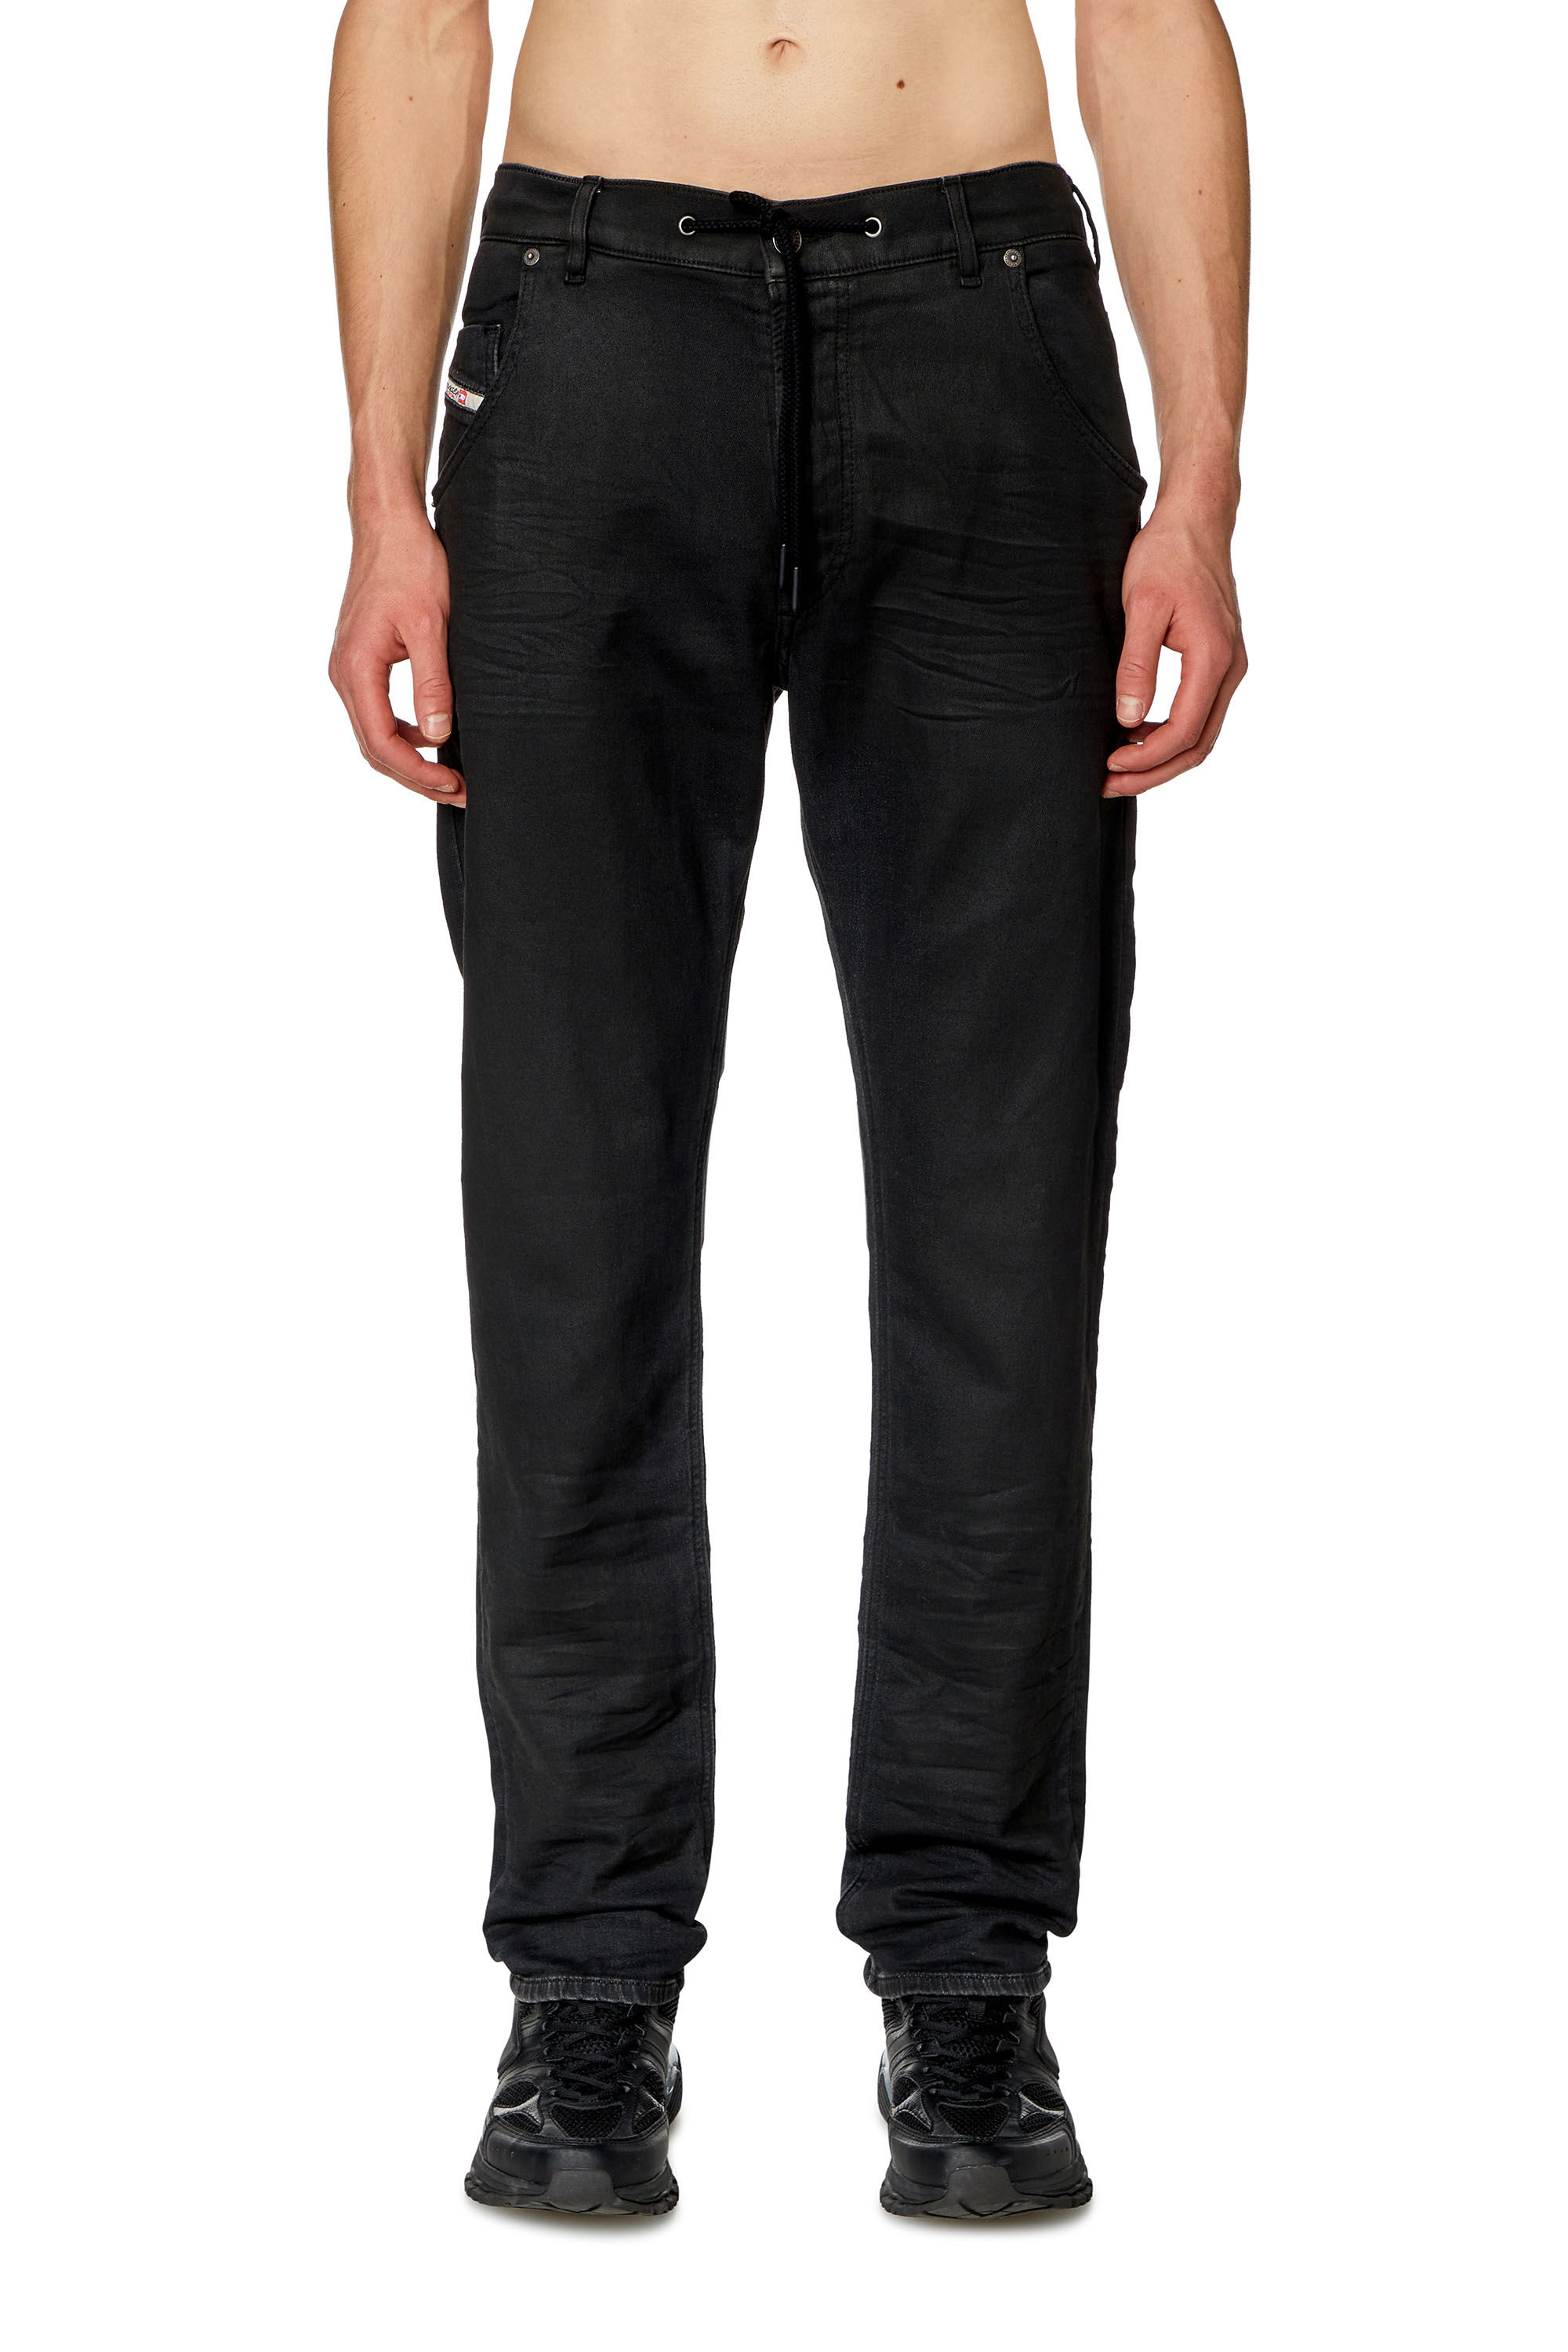 Men's Tapered Jeans | Black/Dark grey | Diesel 2030 D-Krooley 